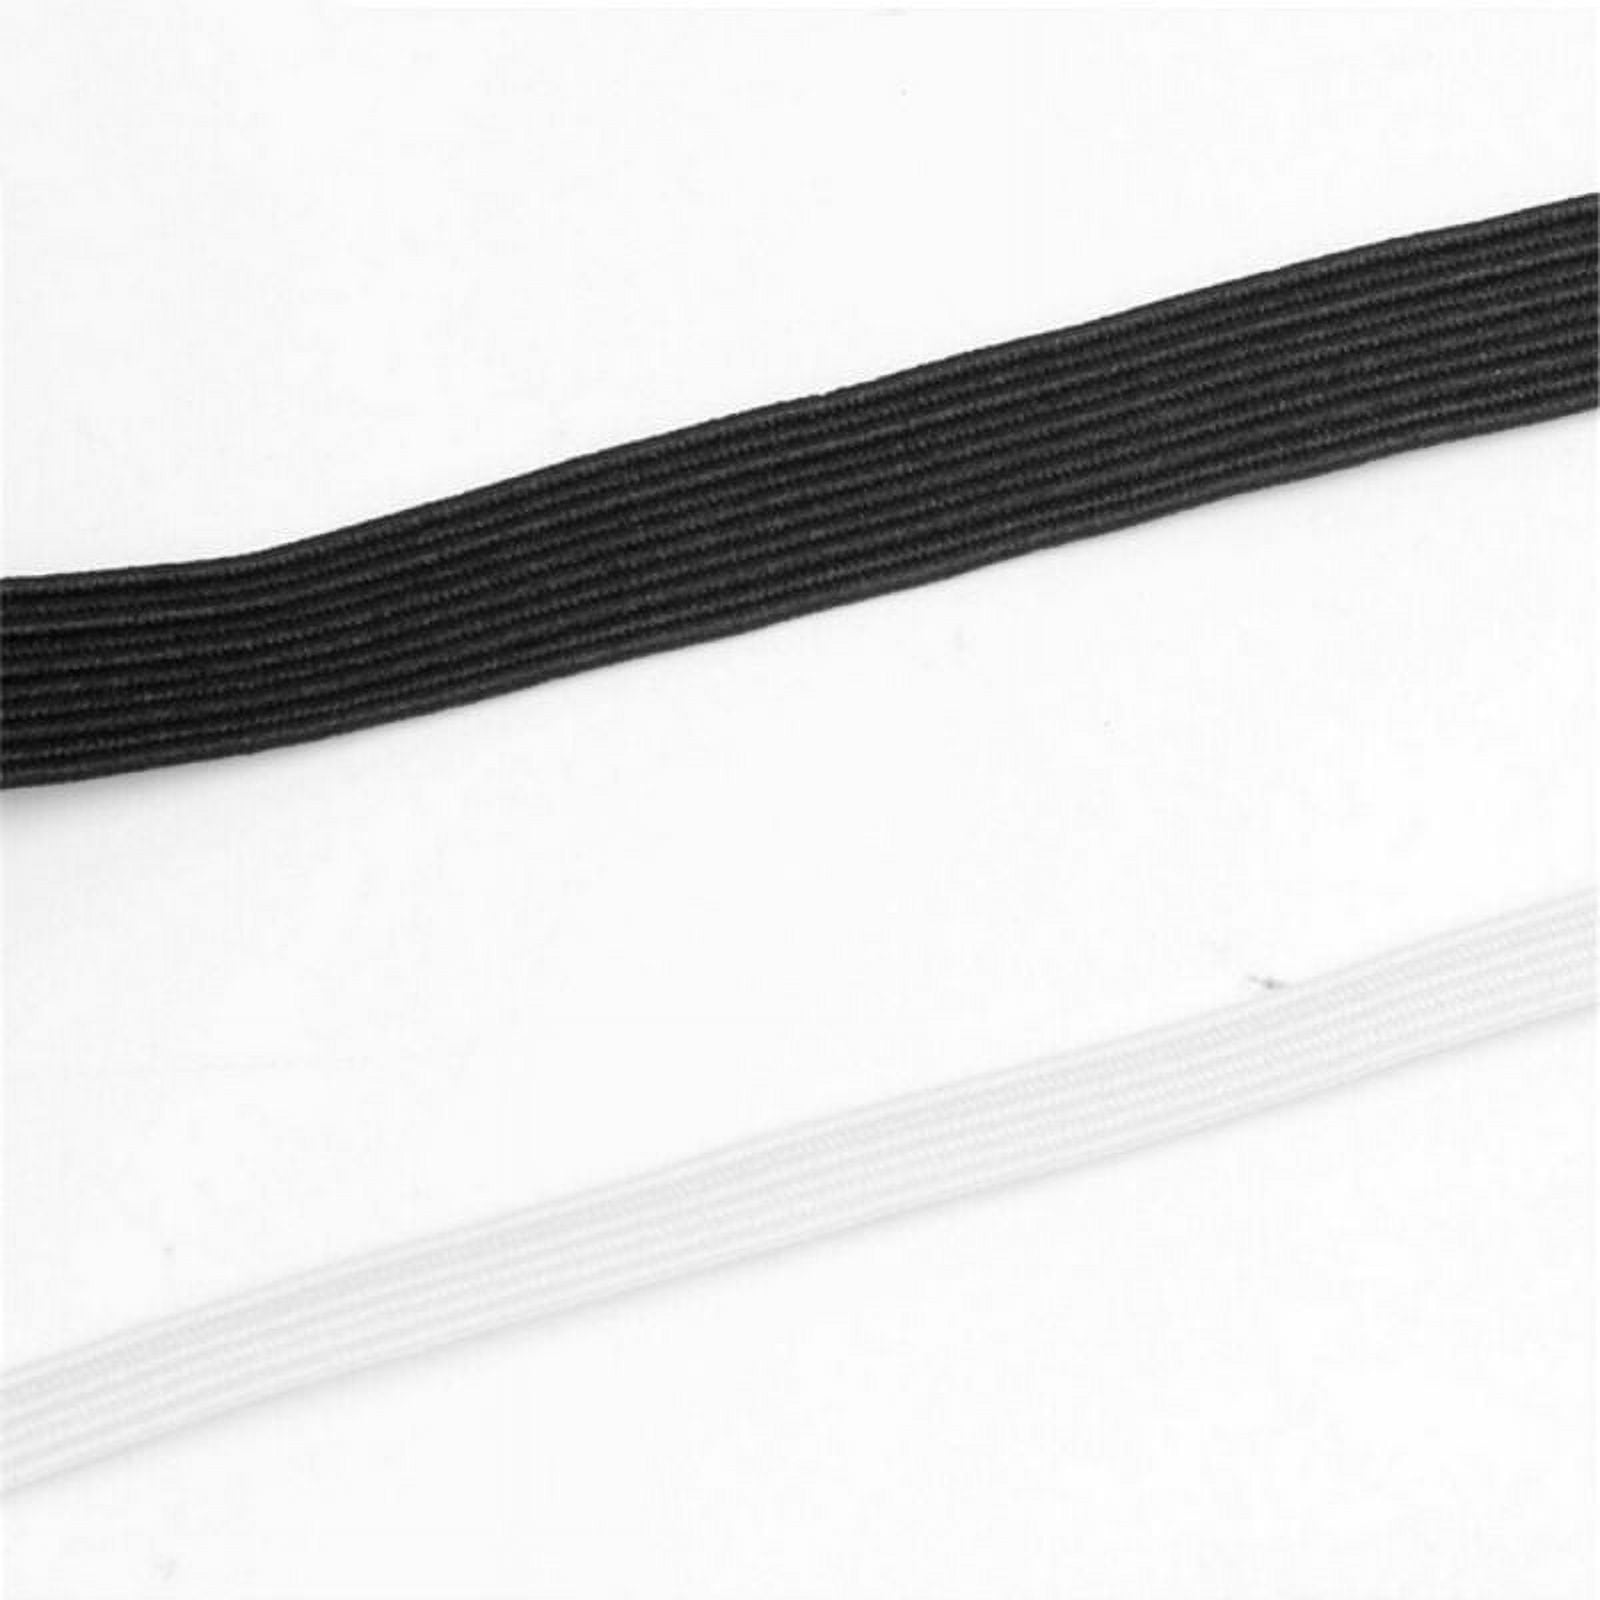 Abbaoww 3/8 inch 144 Yard Braided Elastic, Springy Stretch Braided Elastic Cord Elastic Band, White